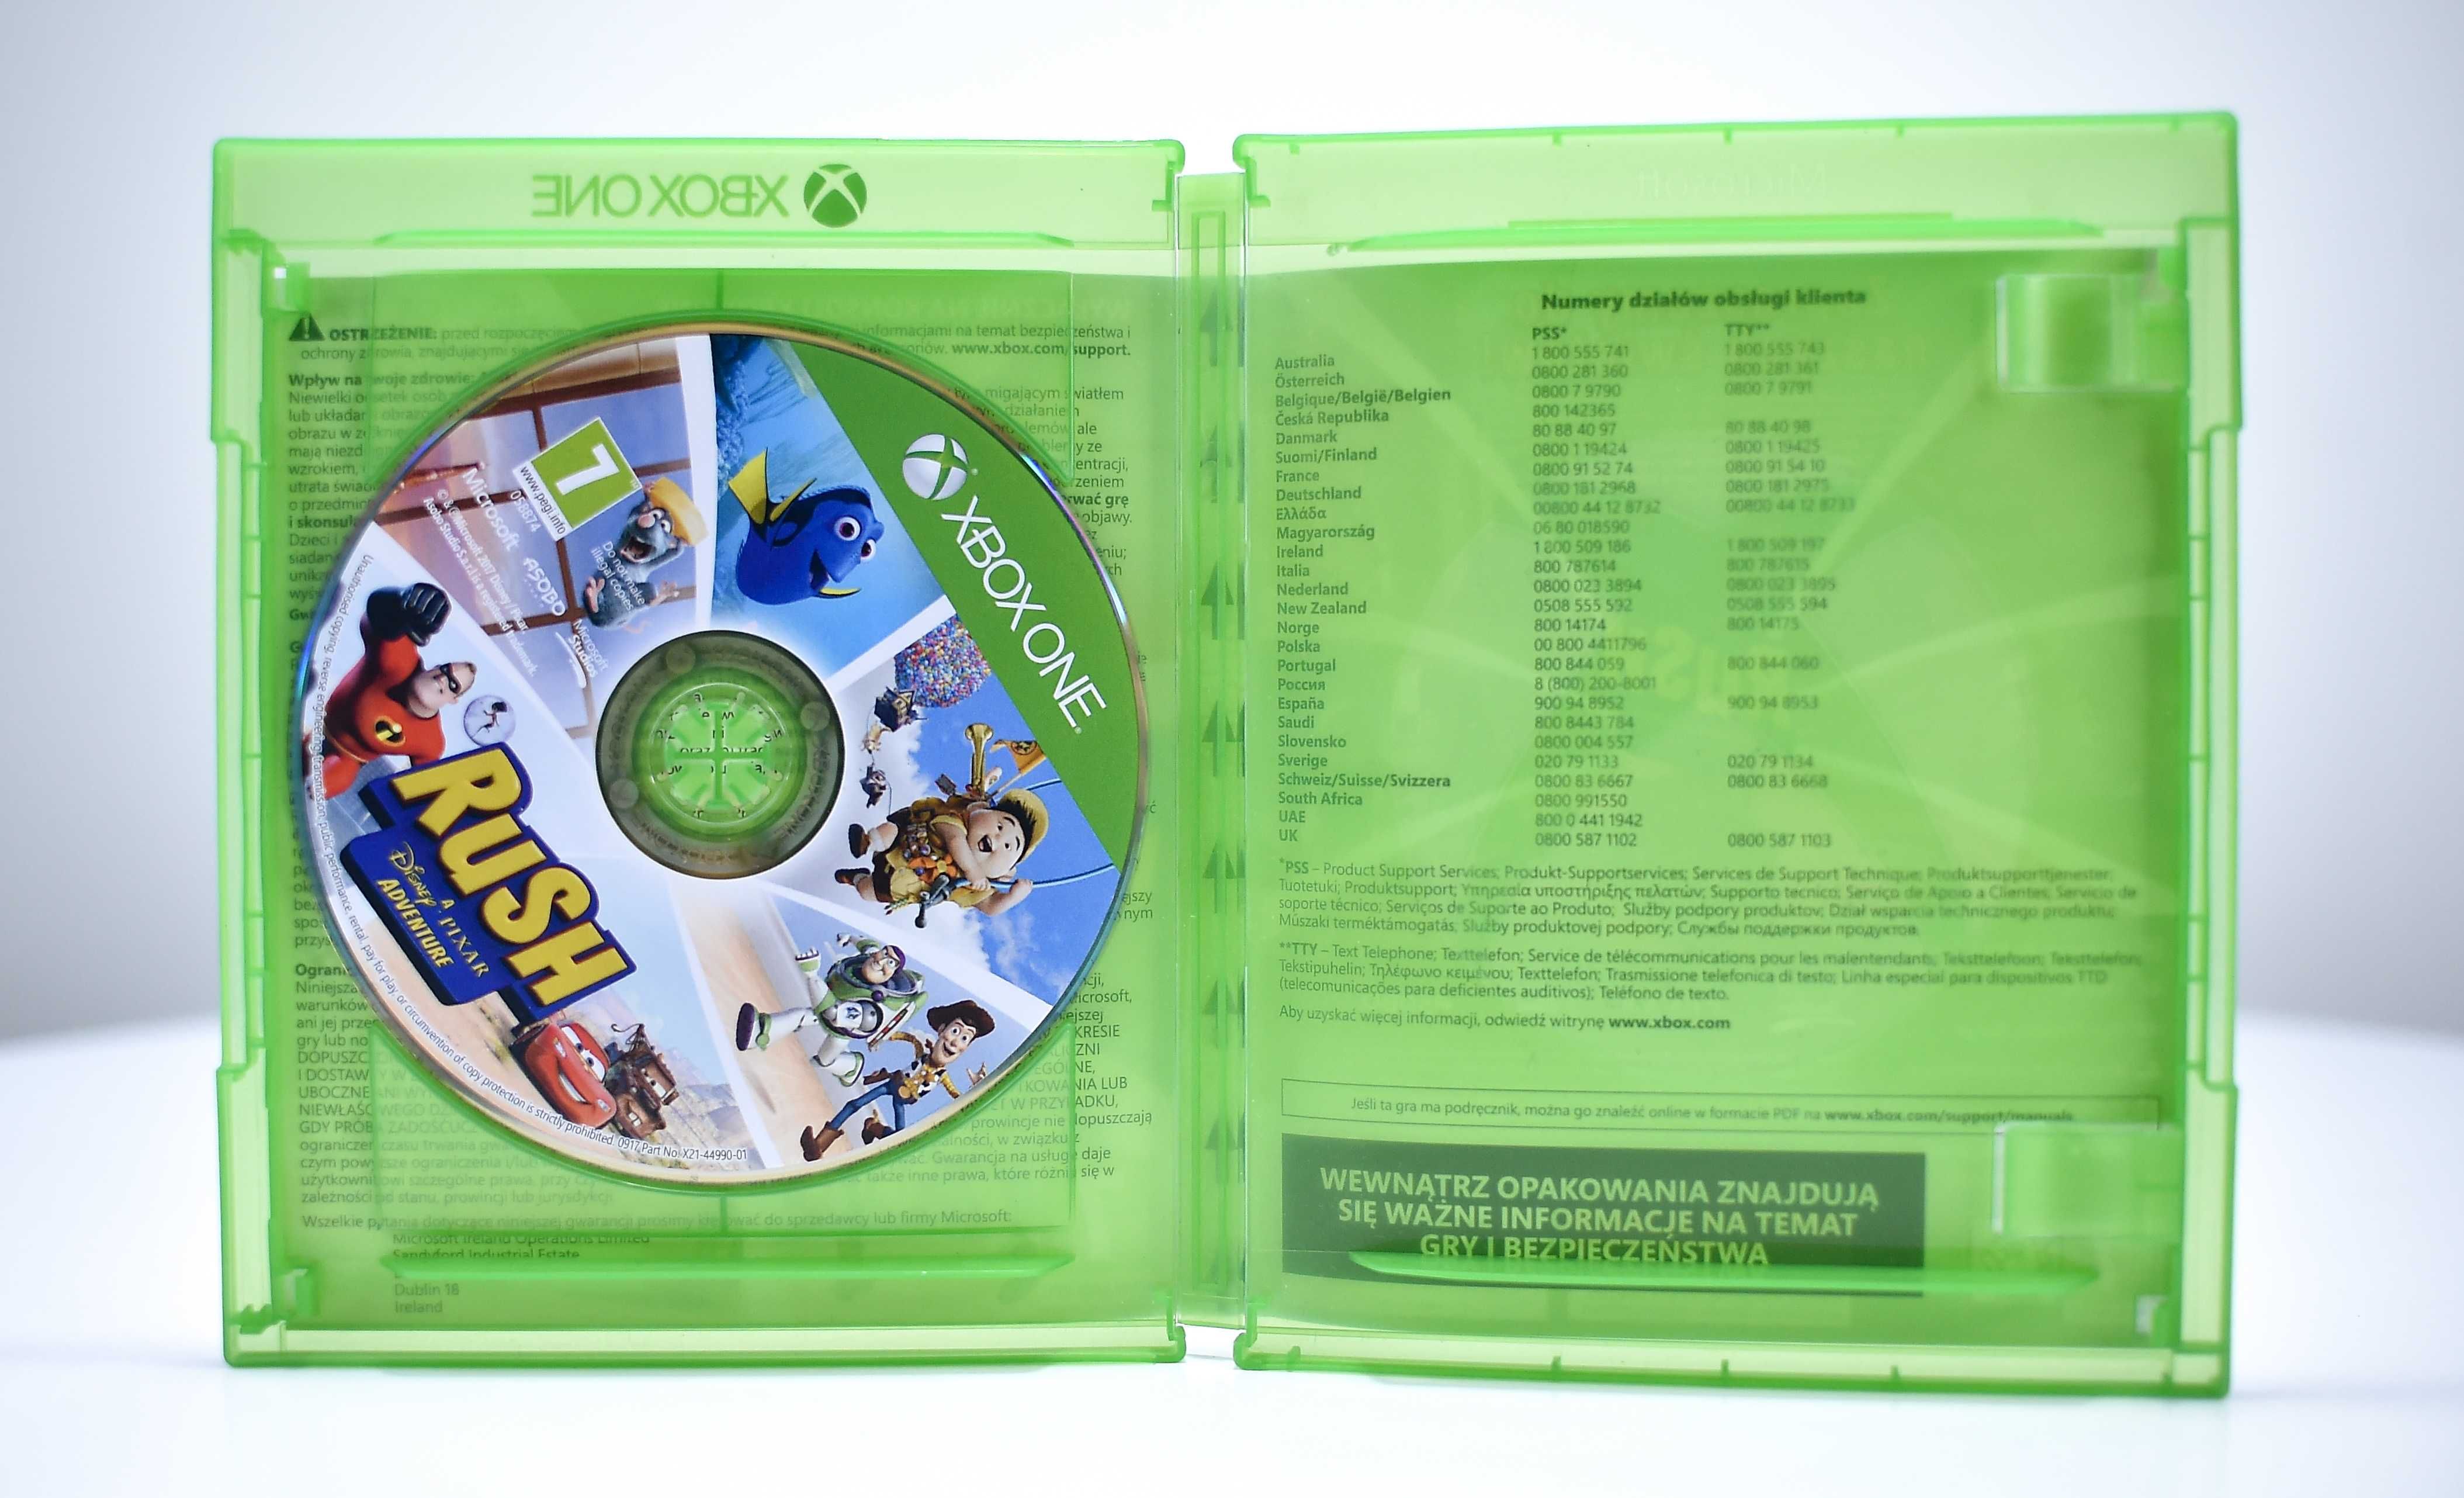 Xbox One # Rush Przygoda ze studiem Disney Pixar